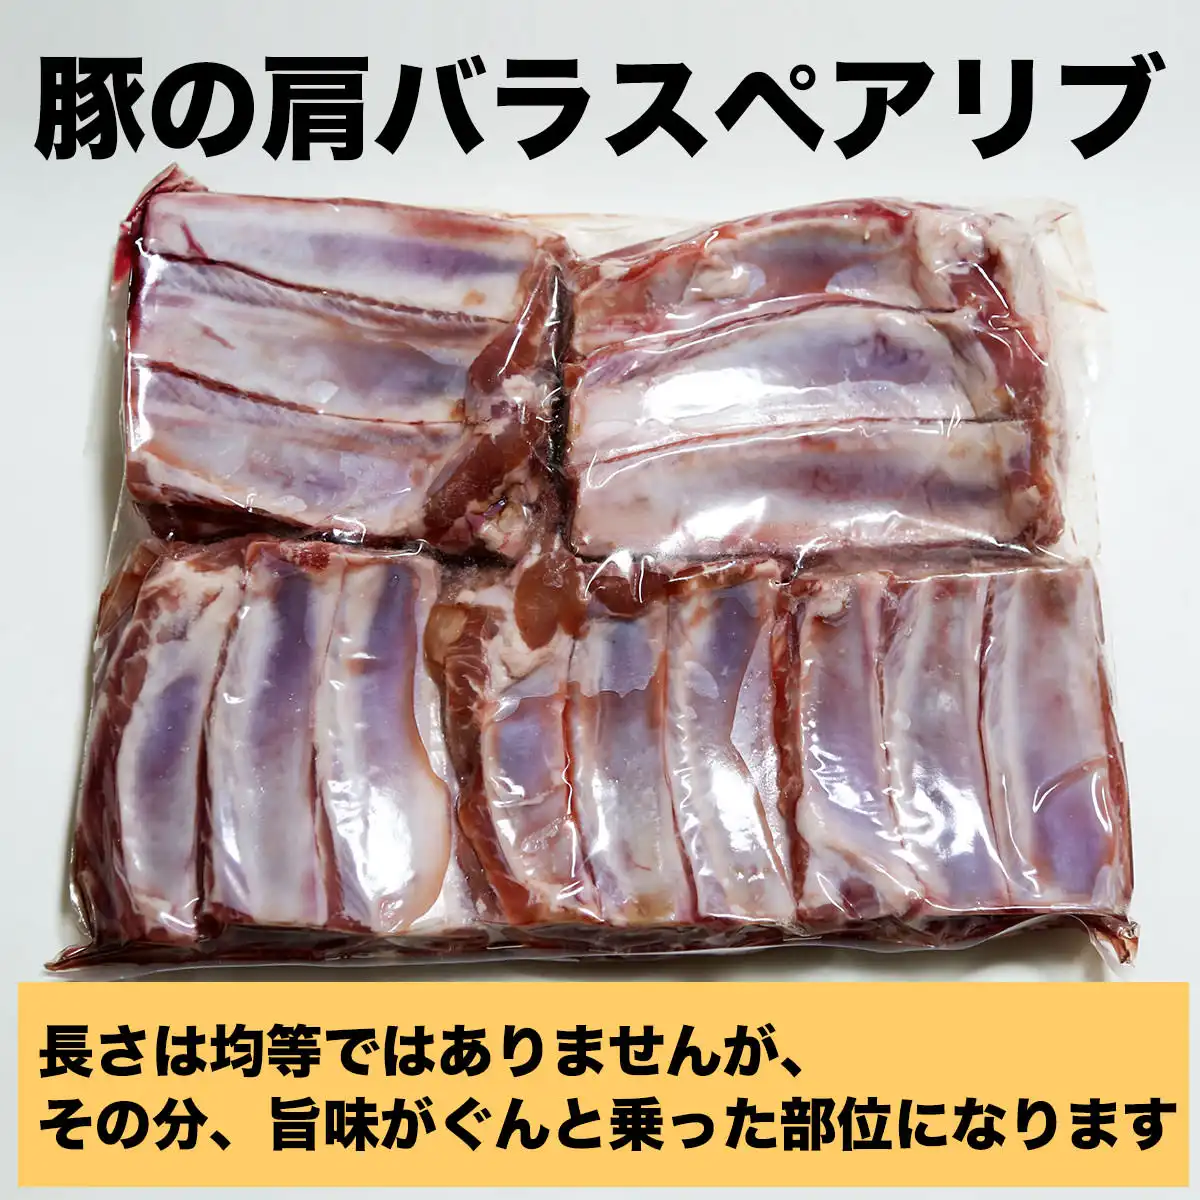 スペアリブ + 松阪牛ハンバーグ6個